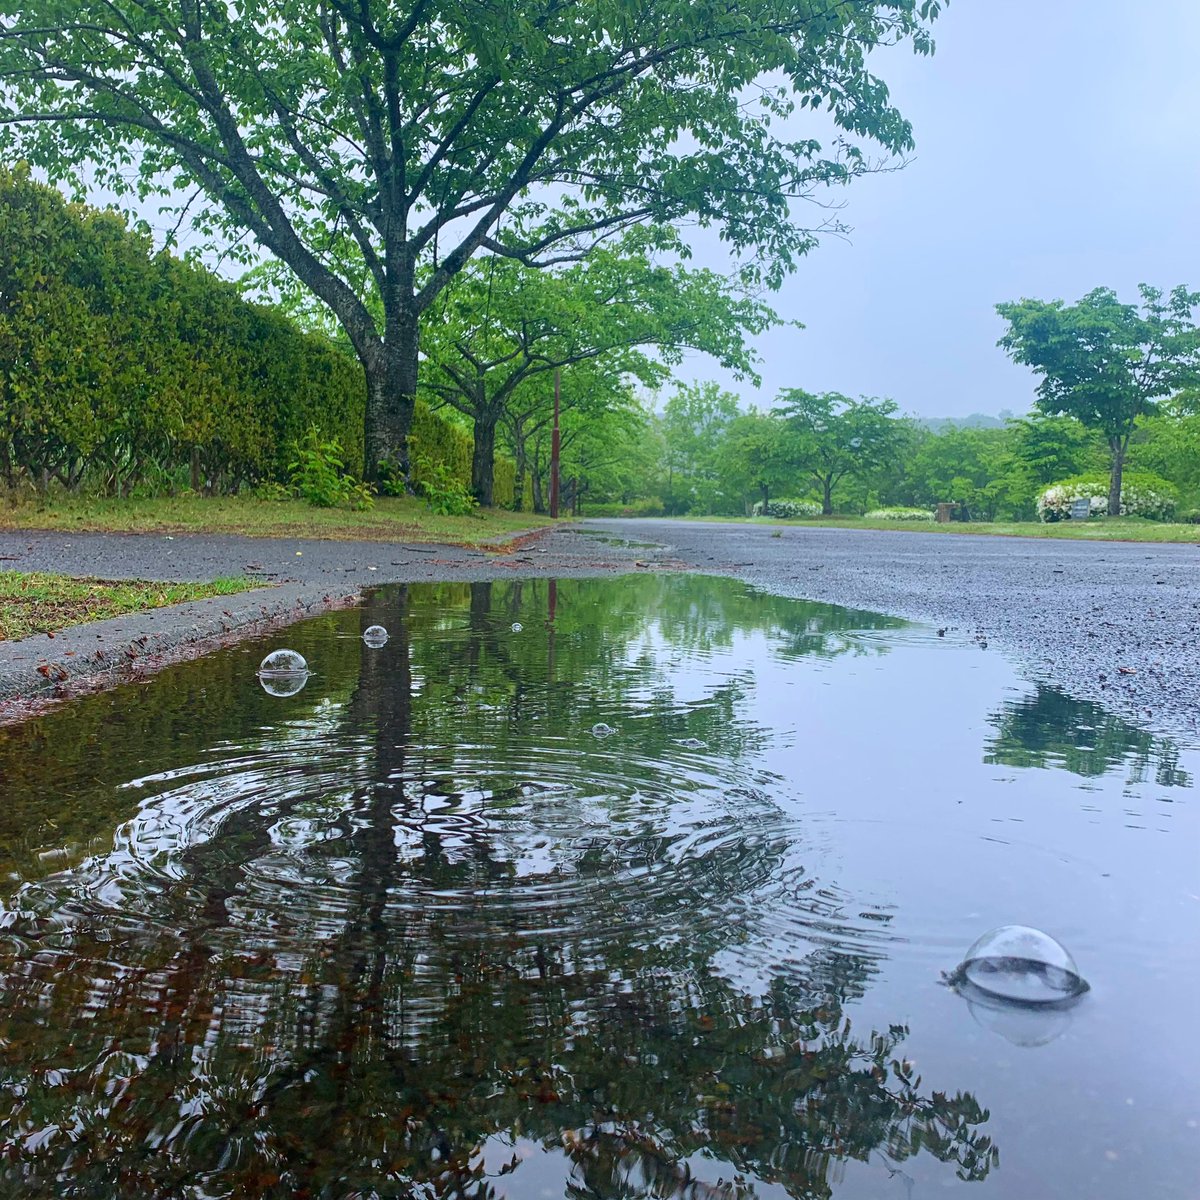 #21世紀の森公園
#いわき市
#福島県
#ウォーキング
#雨上がりの奇跡
#maro
#landscapephotography
#スマホ撮り
#iphone14pro
#フォト散歩
#スナップ
#風景写真
#日本の美しい風景
#美しい国日本